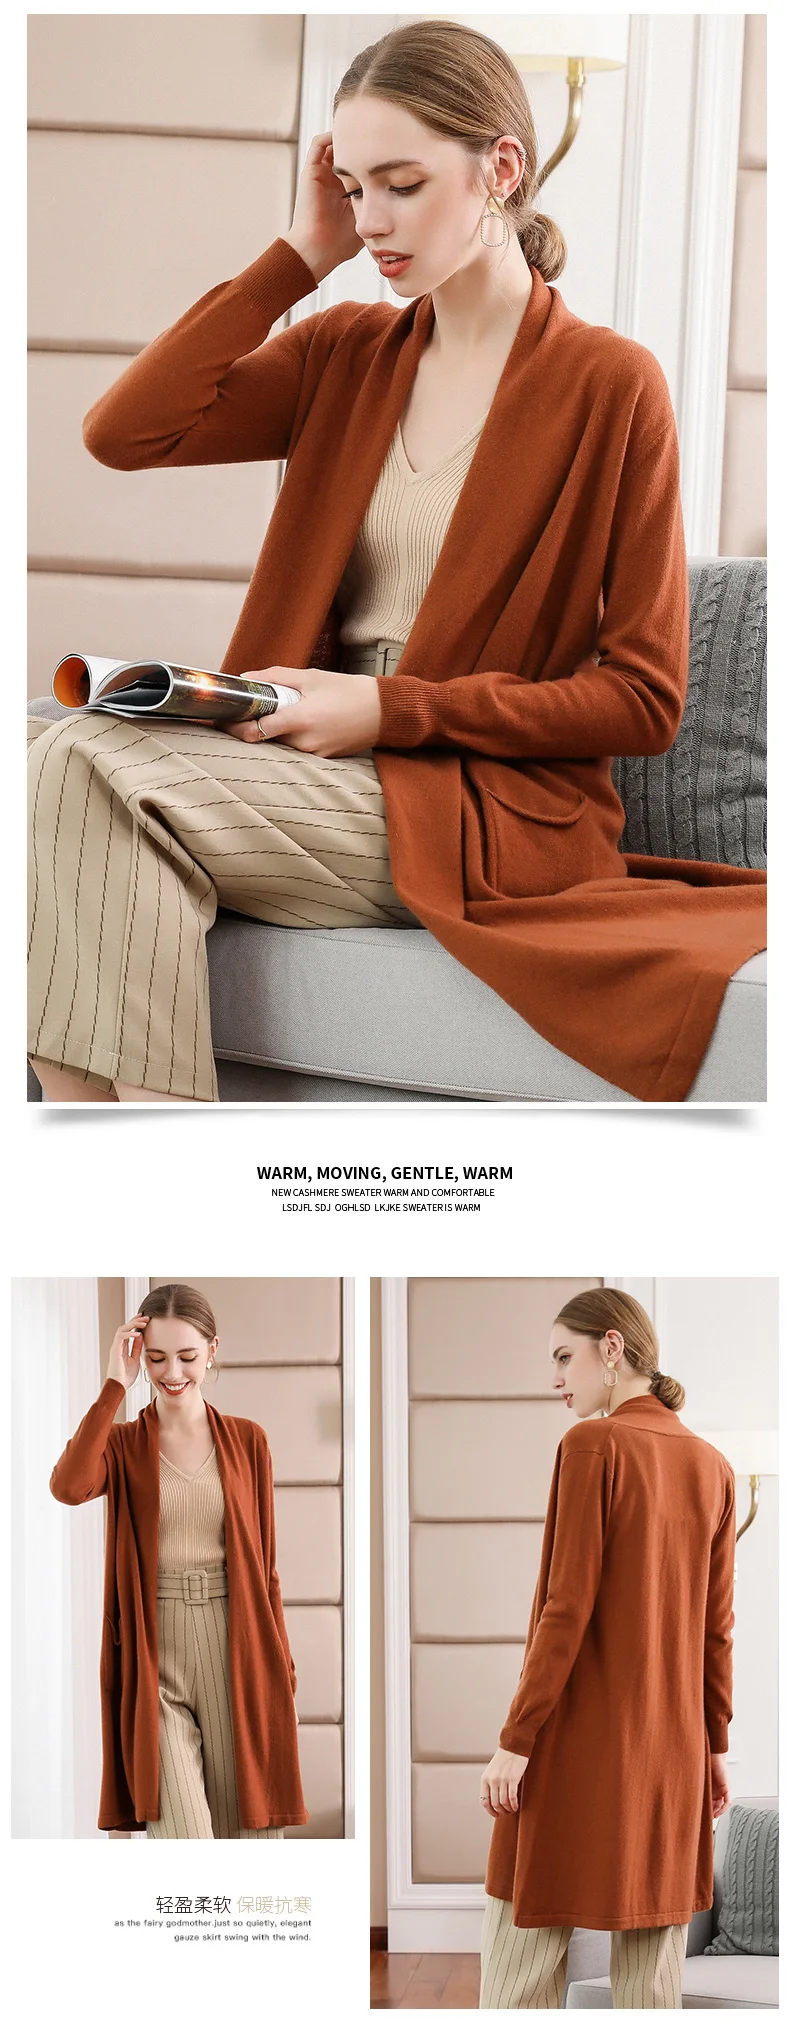 Лучшее качество мягкая куртка для женщин чистый кашемир Вязание кардиганы длинный 4 цвета свитер с открытыми стежками Дамская одежда